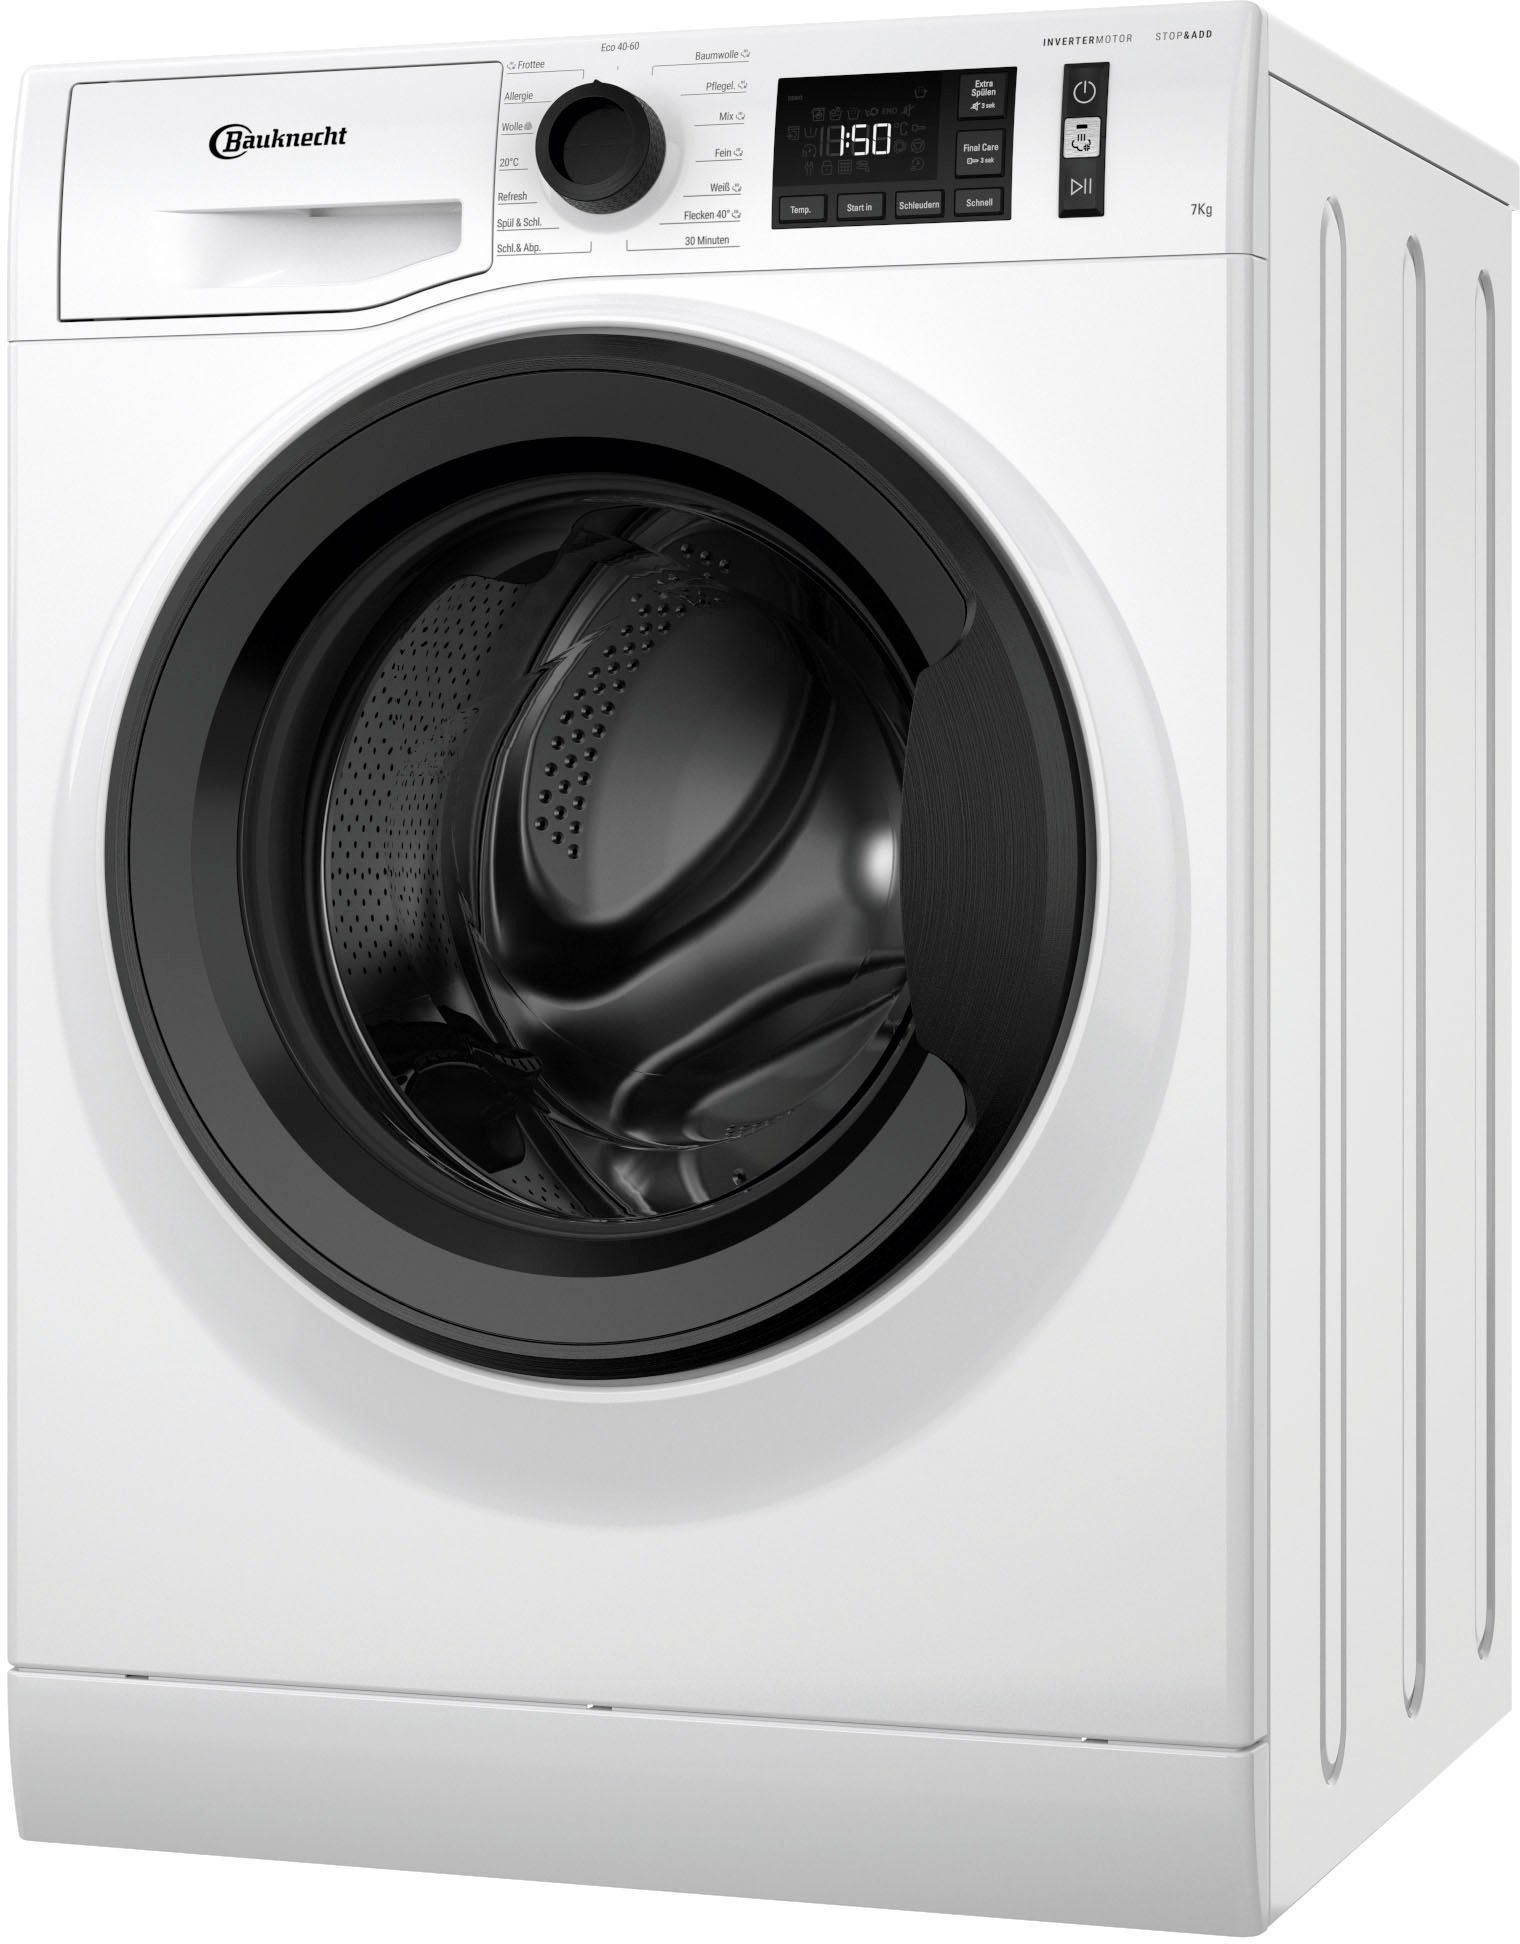 BAUKNECHT Waschmaschine WM Elite 711 CC, 7 kg, 1400 U/min | Frontlader